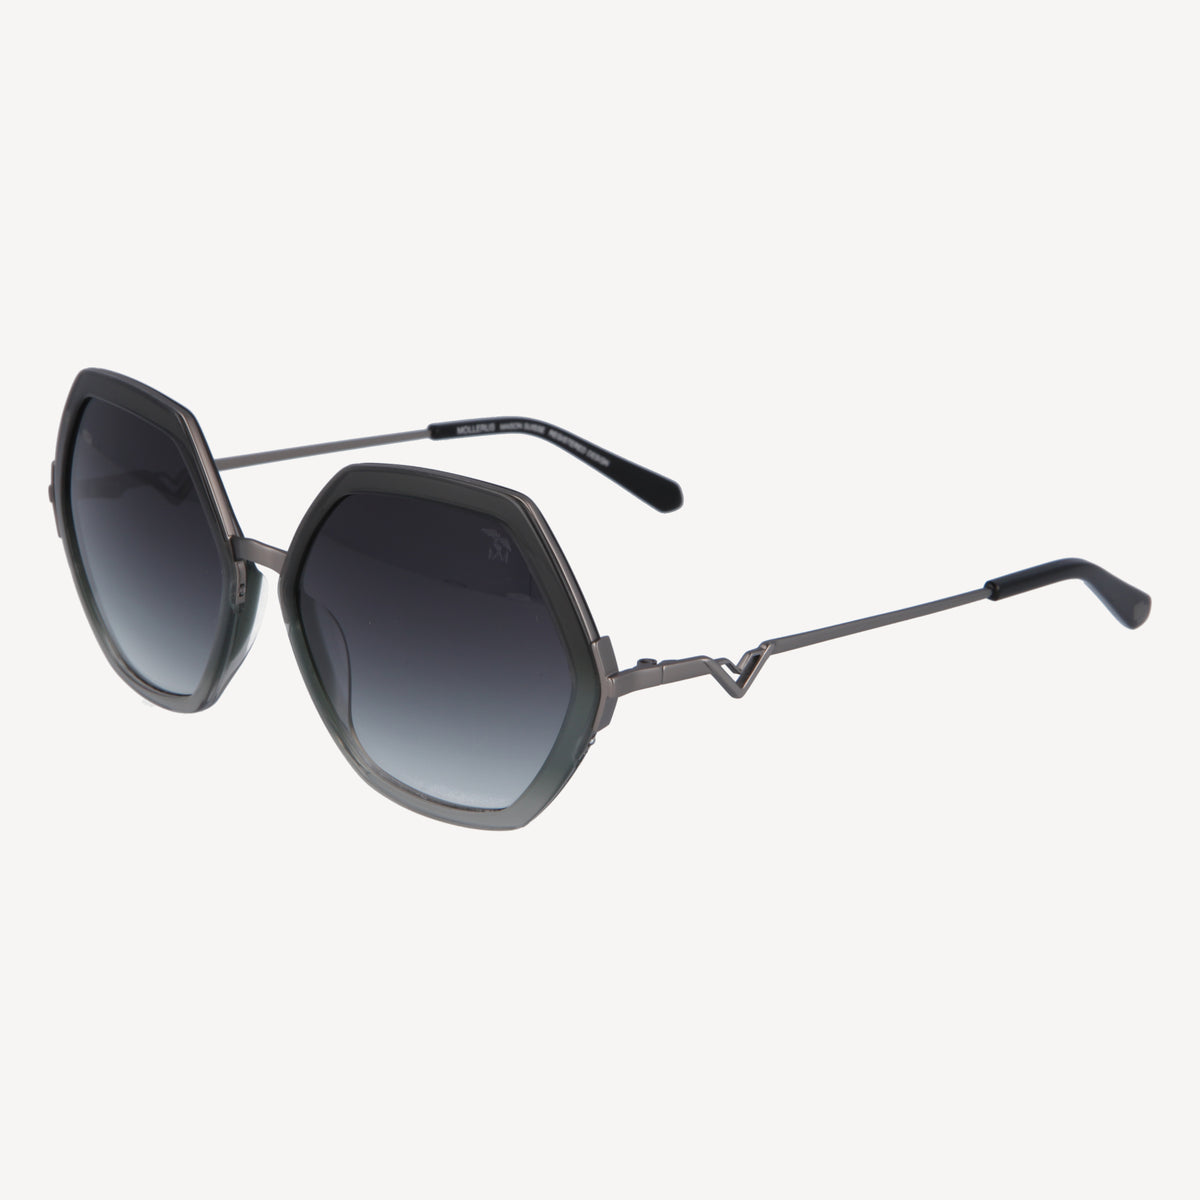 AGNEL | Sonnenbrille classic schwarz/altsilber - seiltich